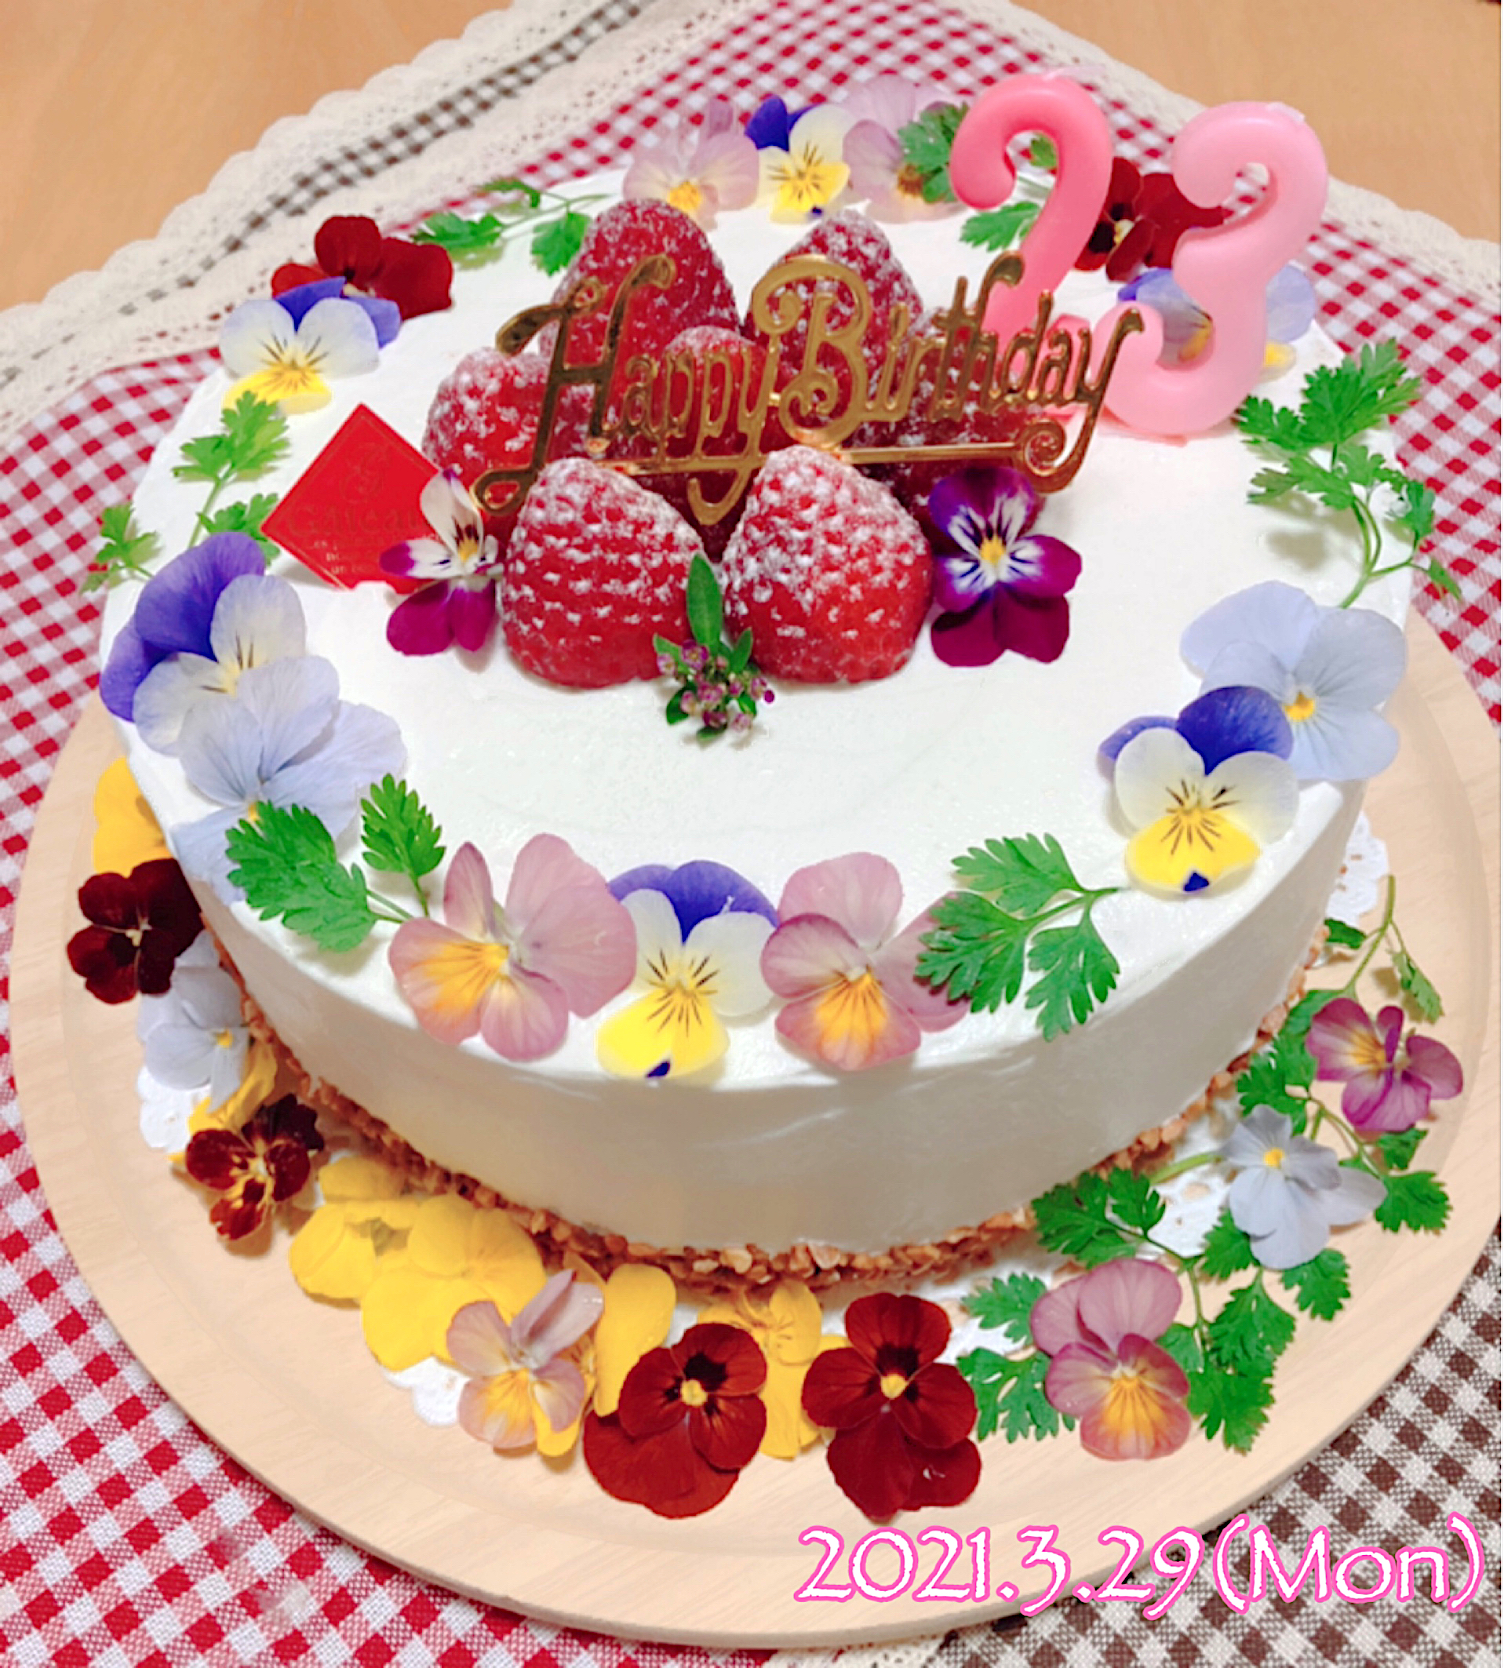 お誕生日おめでとう 長女のために作ったバースデーケーキ おうちお花見グランプリ21 ヤマサ醤油株式会社